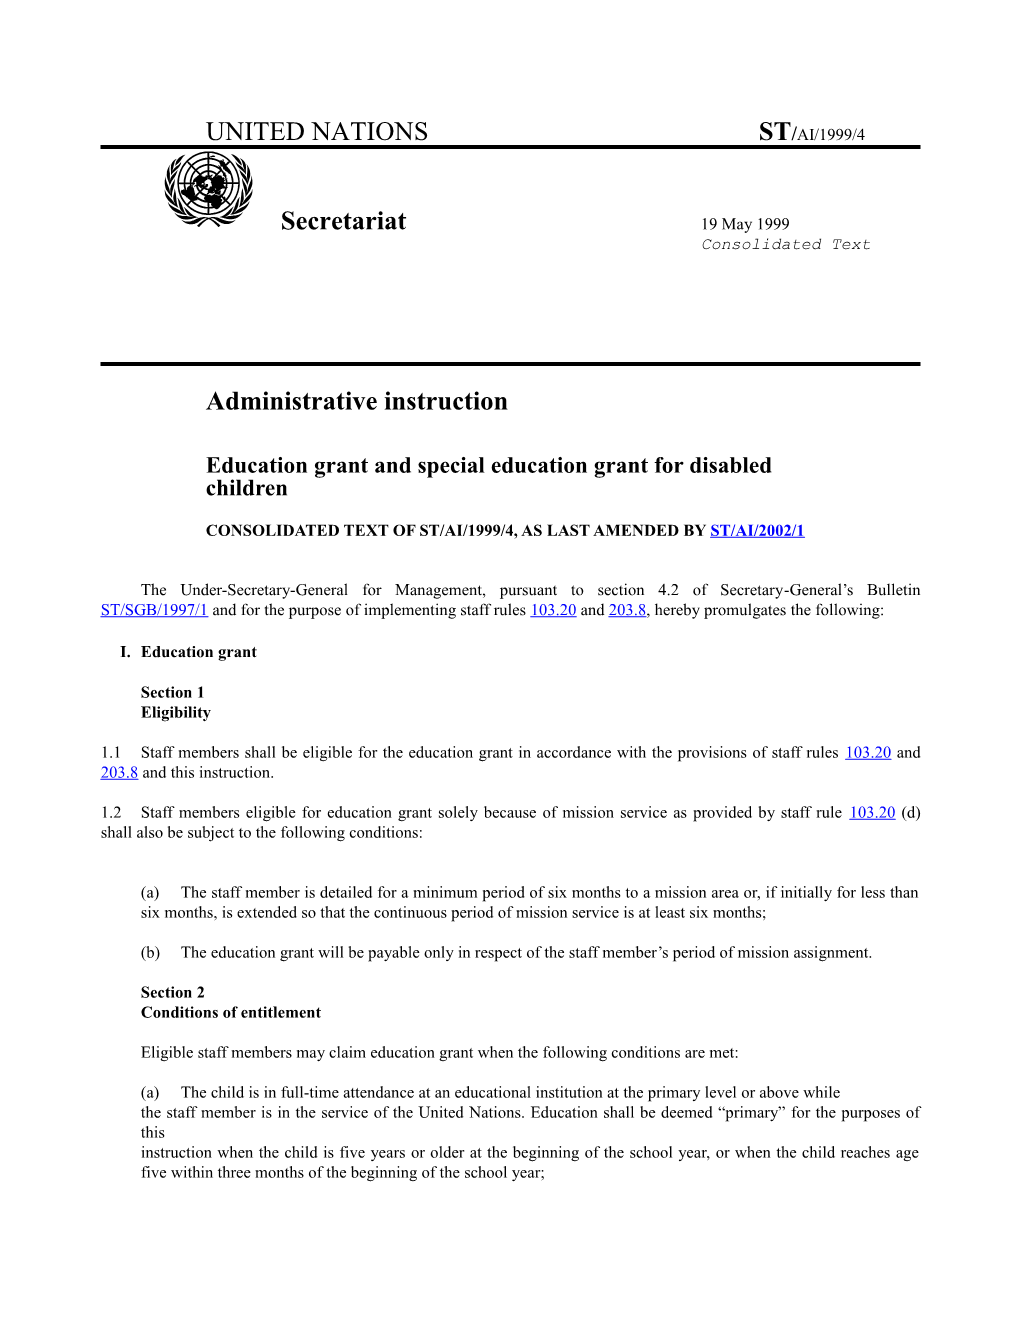 United Nations St/Ai/1999/4